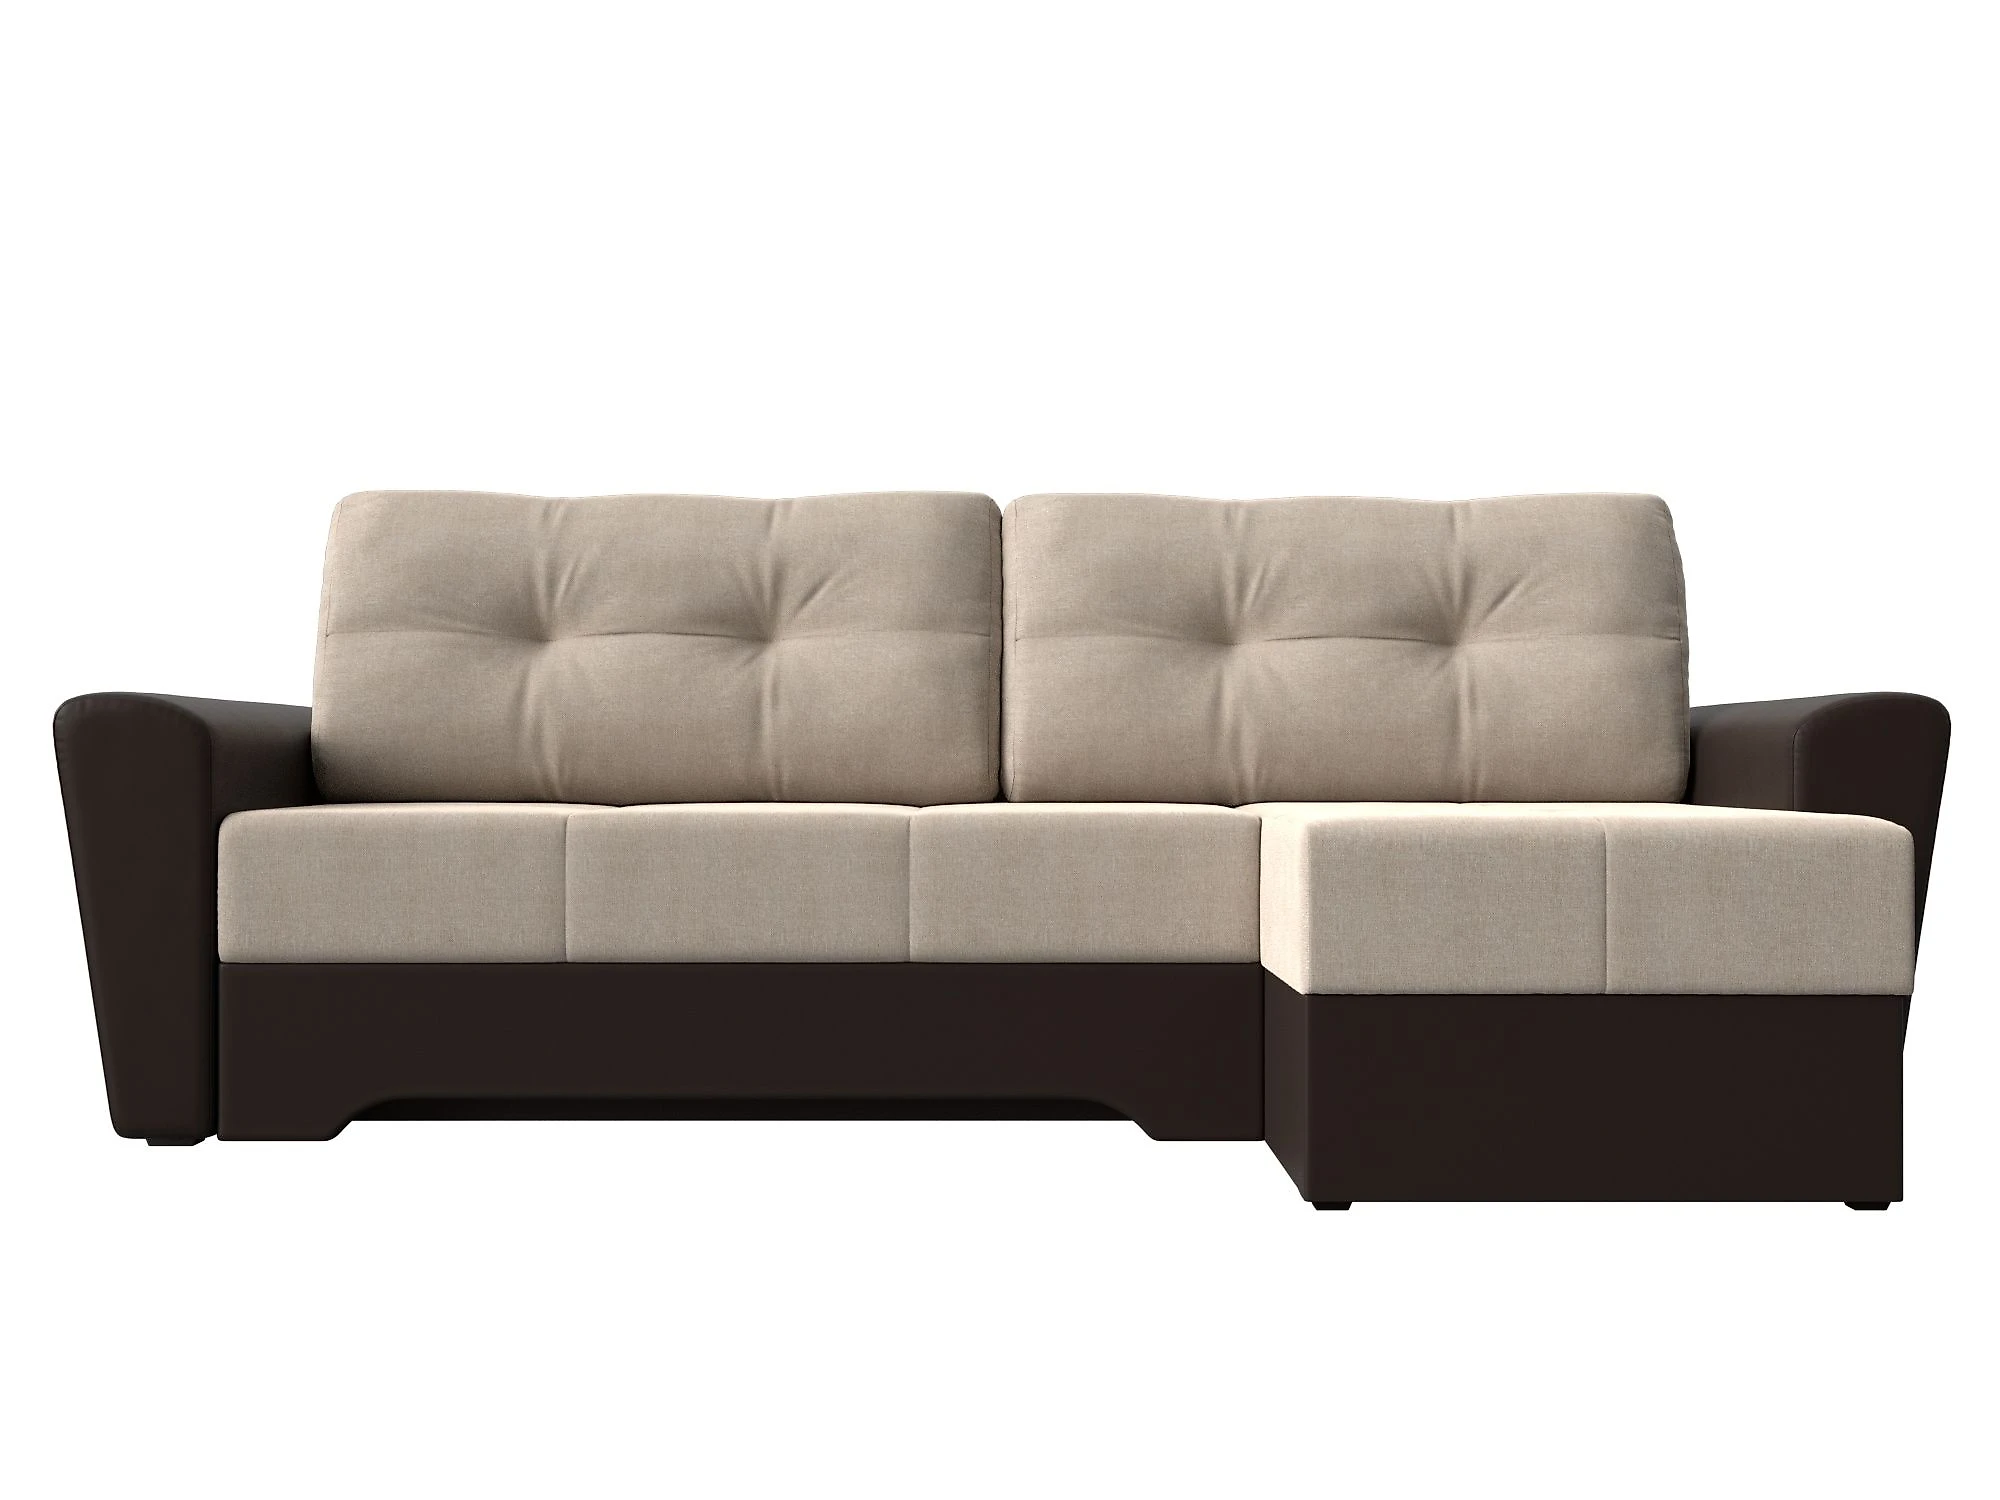  угловой диван из рогожки Амстердам Кантри Дизайн 10